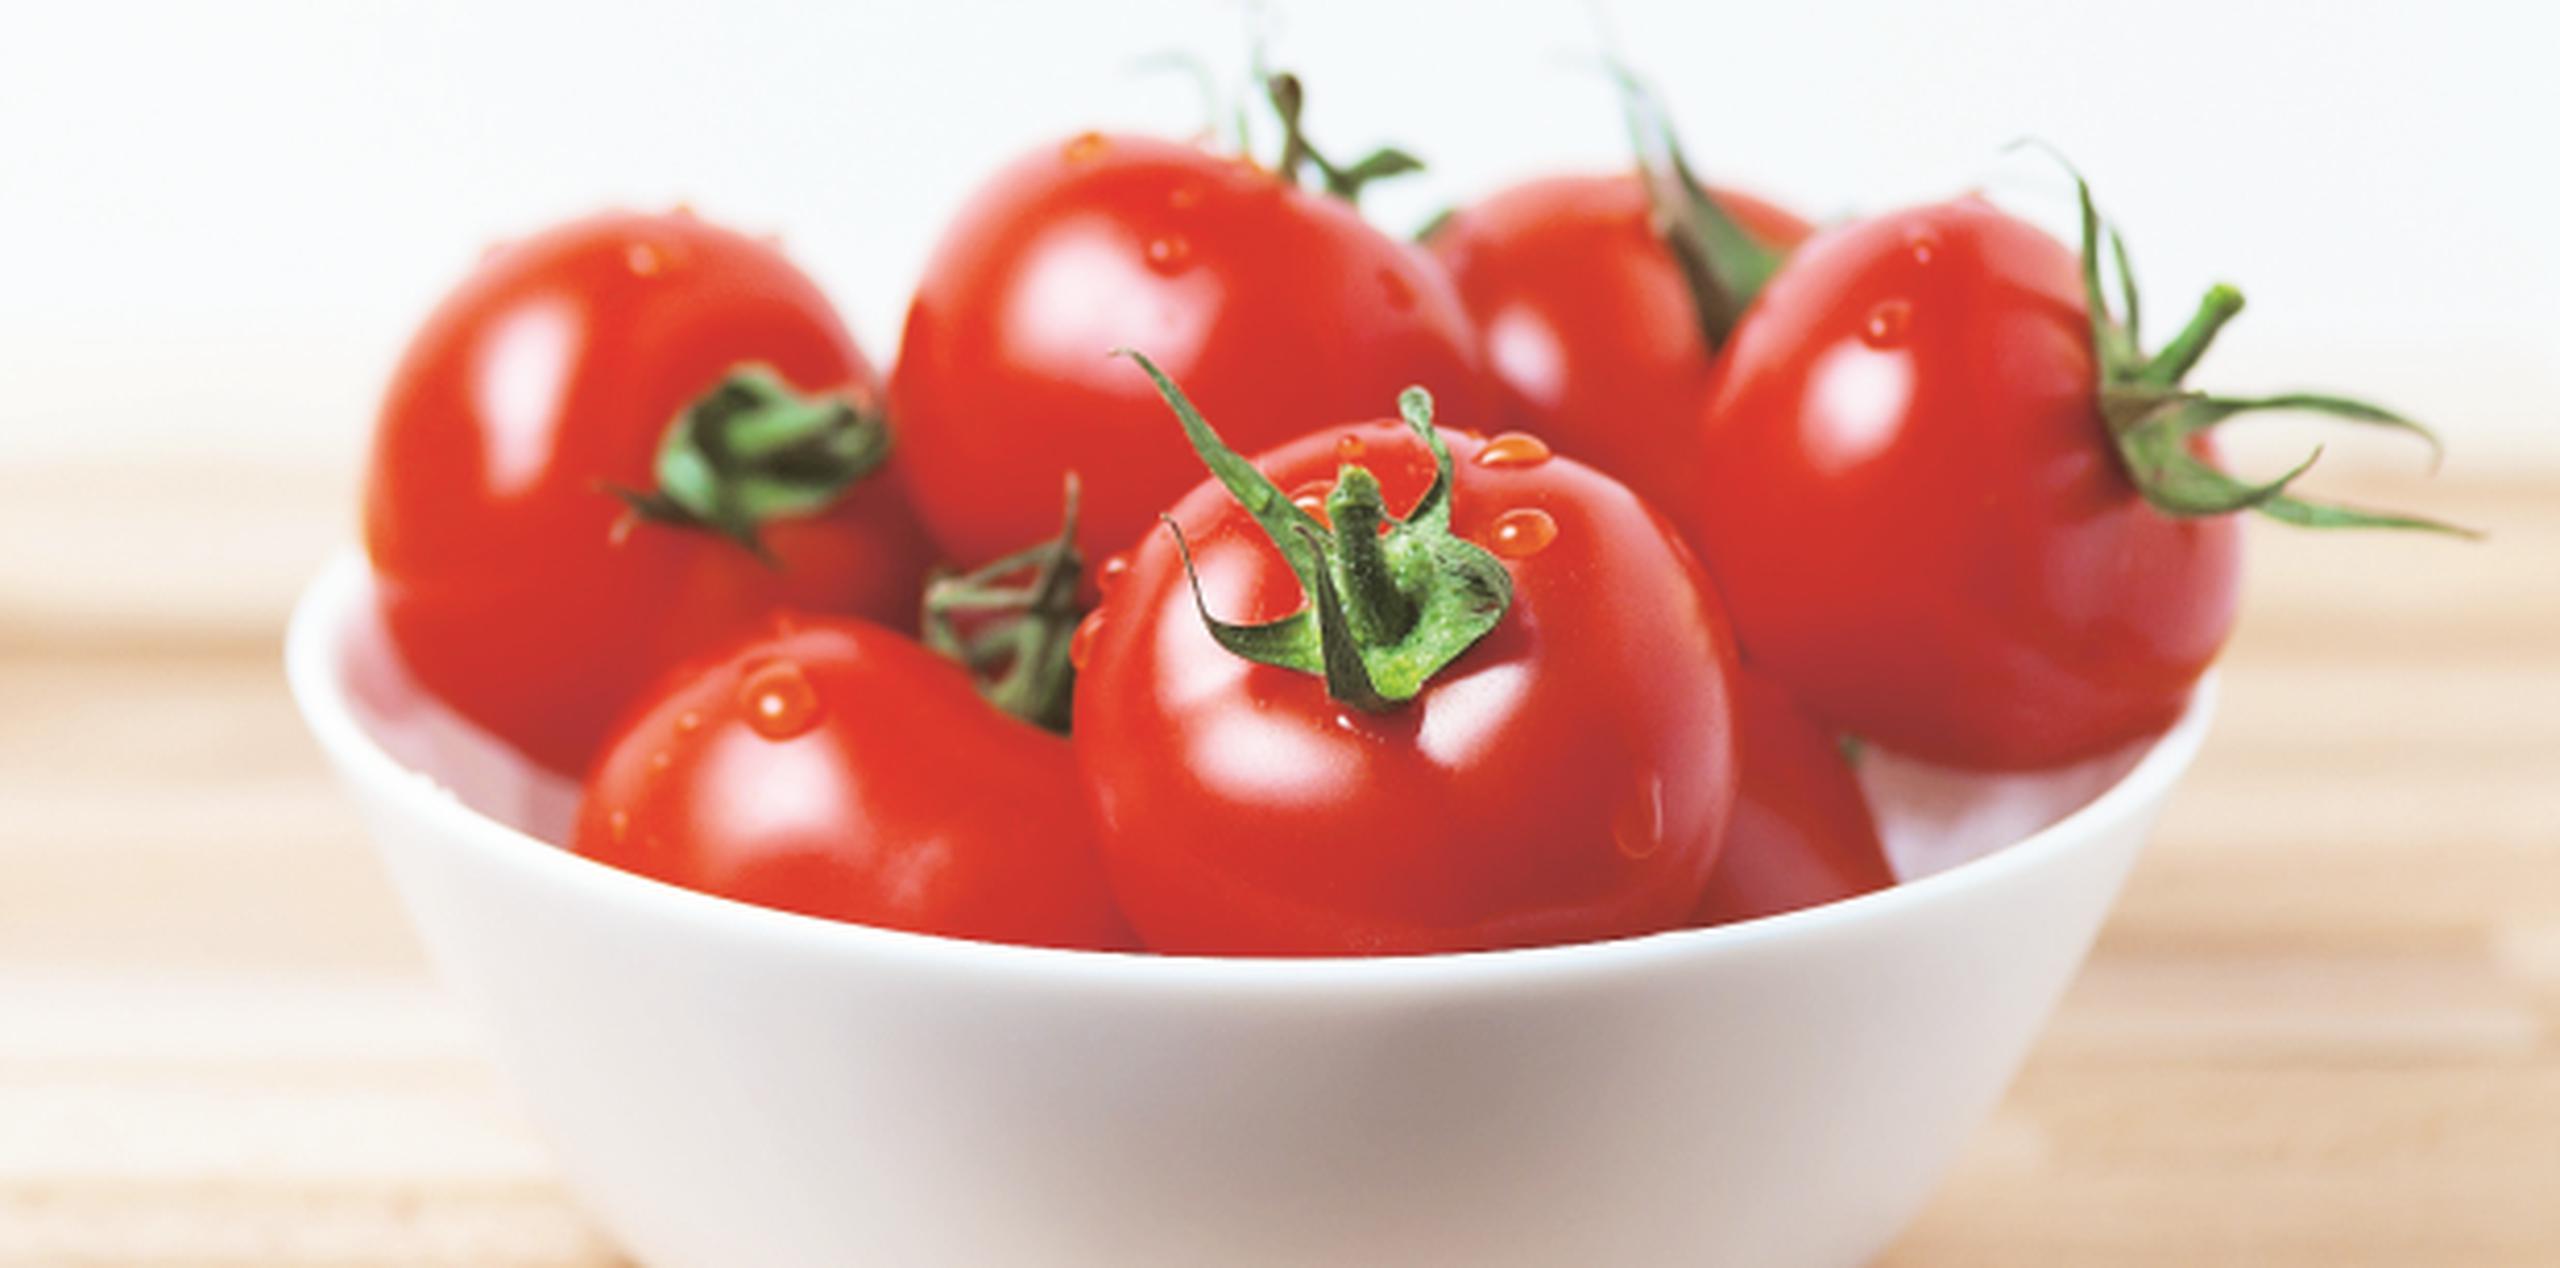 Los tomates almacenados solo uno o tres días no perdieron las sustancias de su aroma. (Archivo)